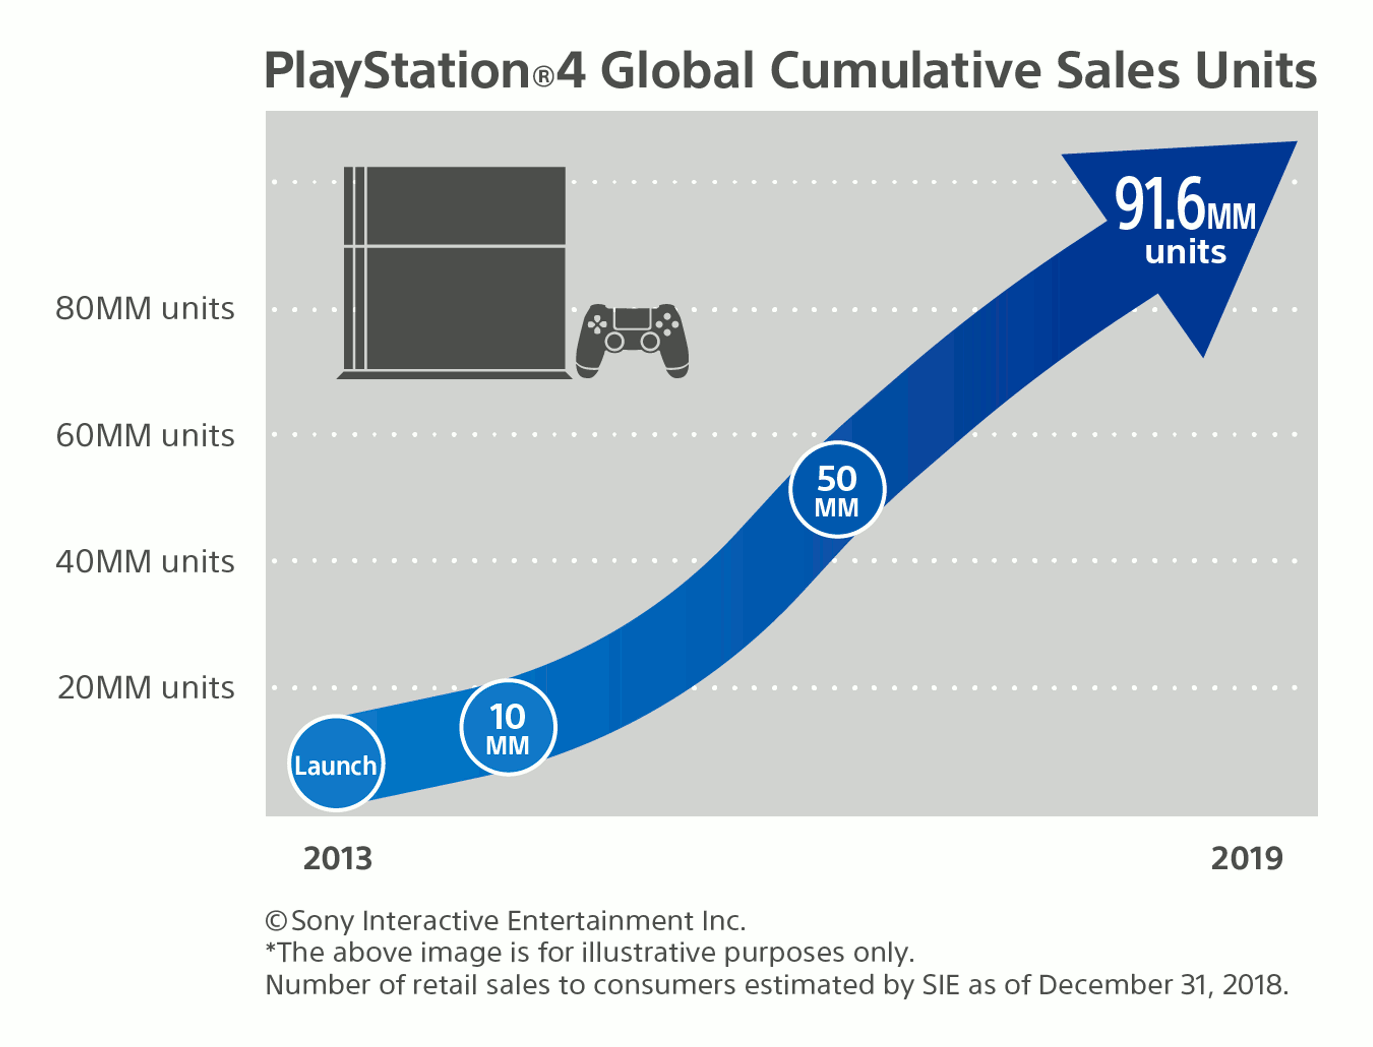 Vente globales cumulées de Playstation 4